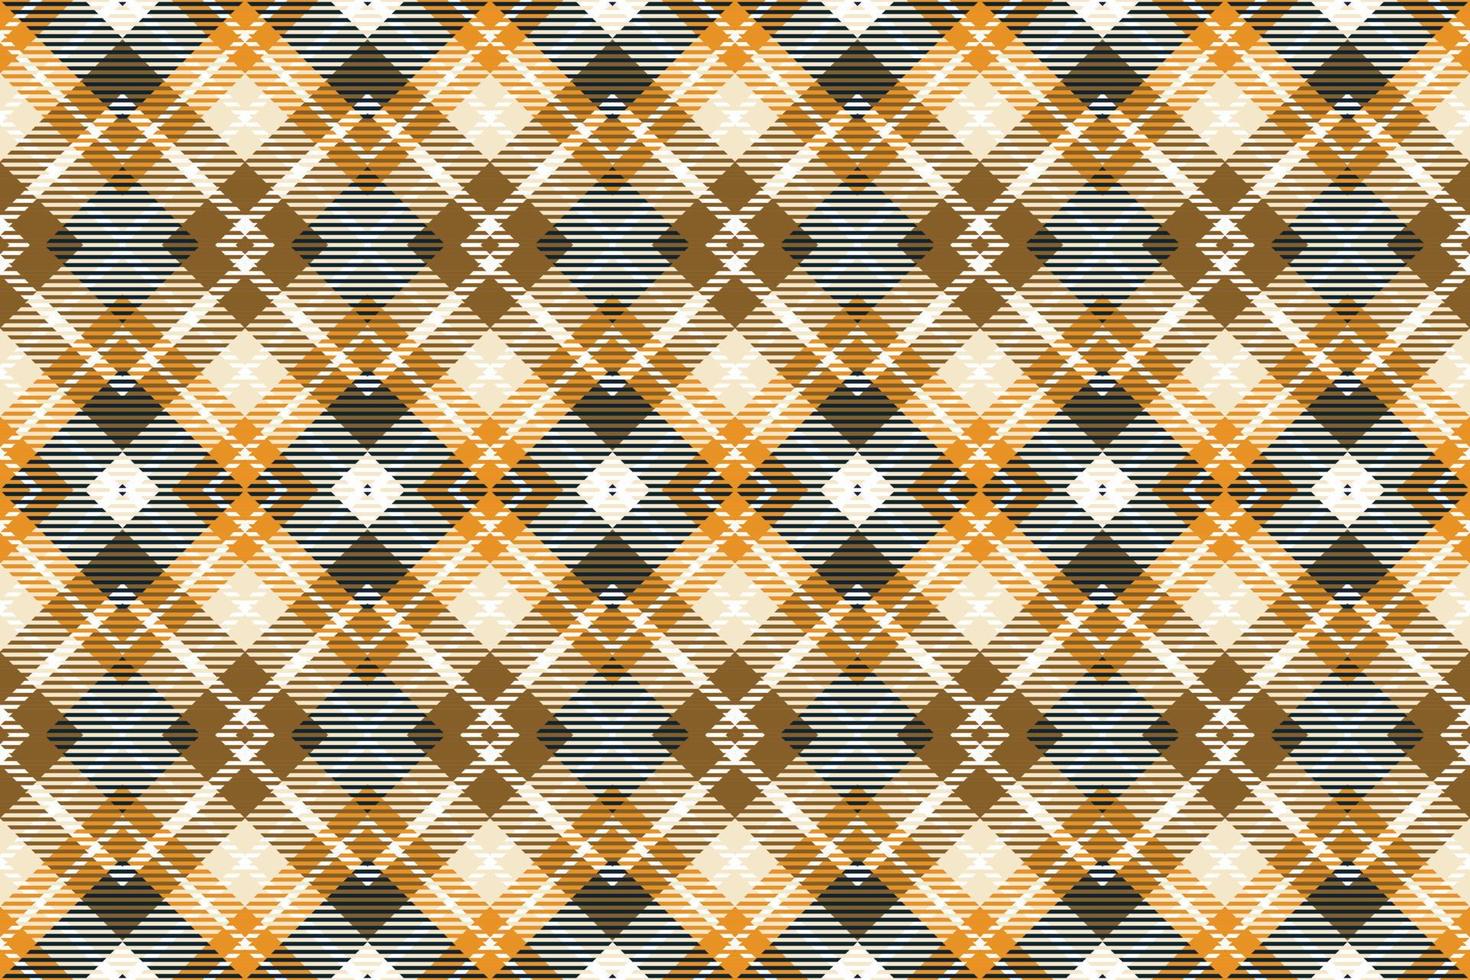 Écossais tartan modèle sans couture est une à motifs tissu qui consiste de sillonner franchi, horizontal et verticale bandes dans plusieurs couleurs.plaid sans couture pour écharpe, pyjama, couverture, couette, kilt grand châle. vecteur